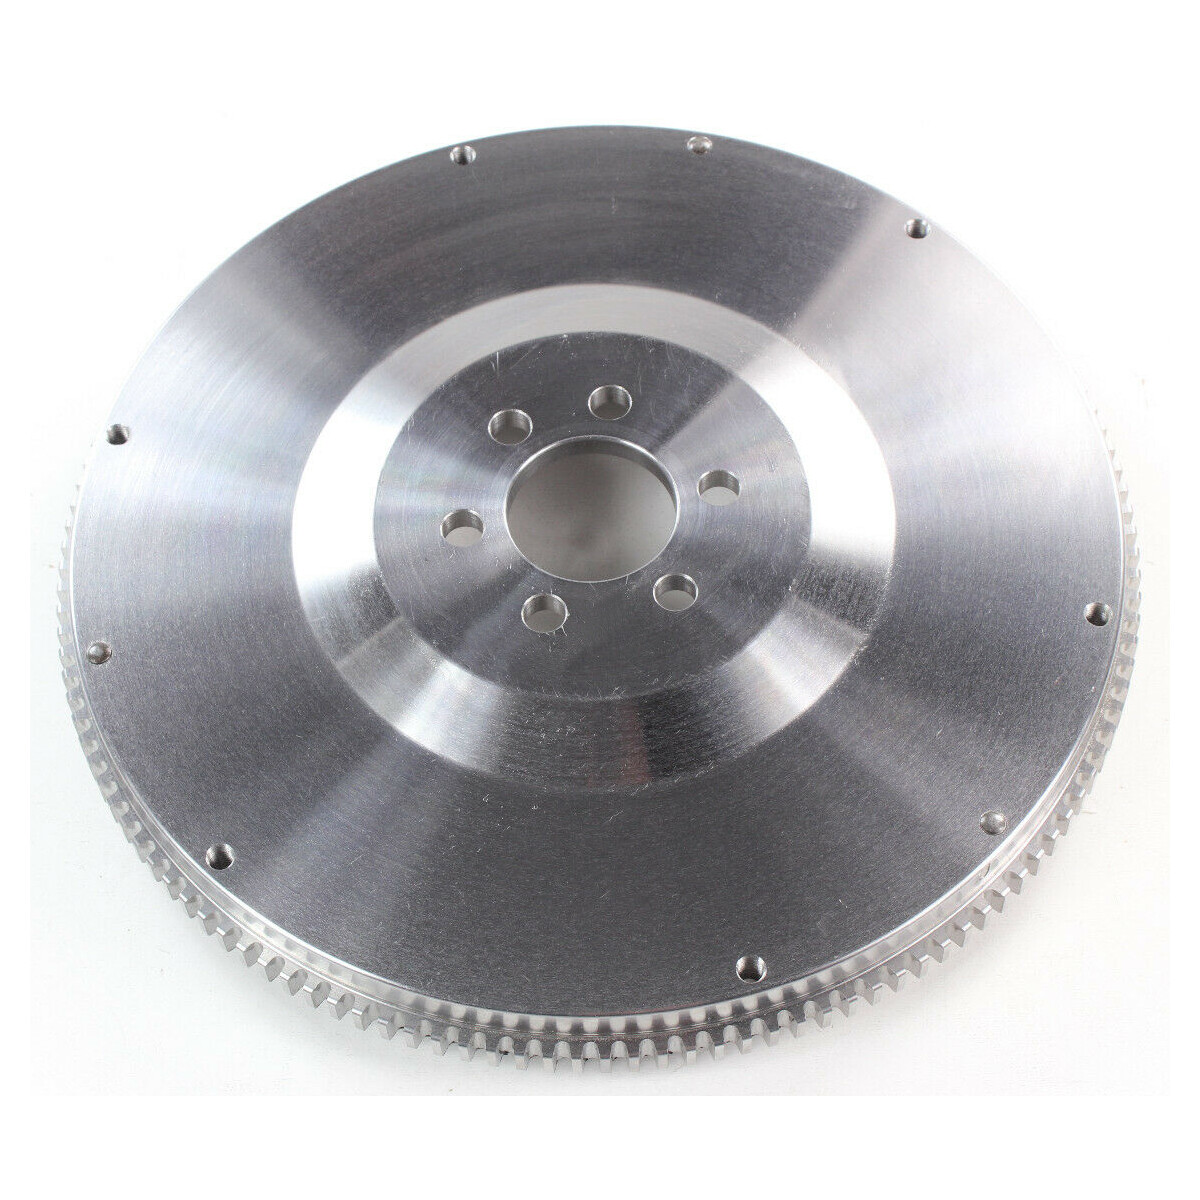 Billet lightened flywheel (4.8kg) for 02A + 02J gear box - 1.8L G60, 2.0L 16V, etc.